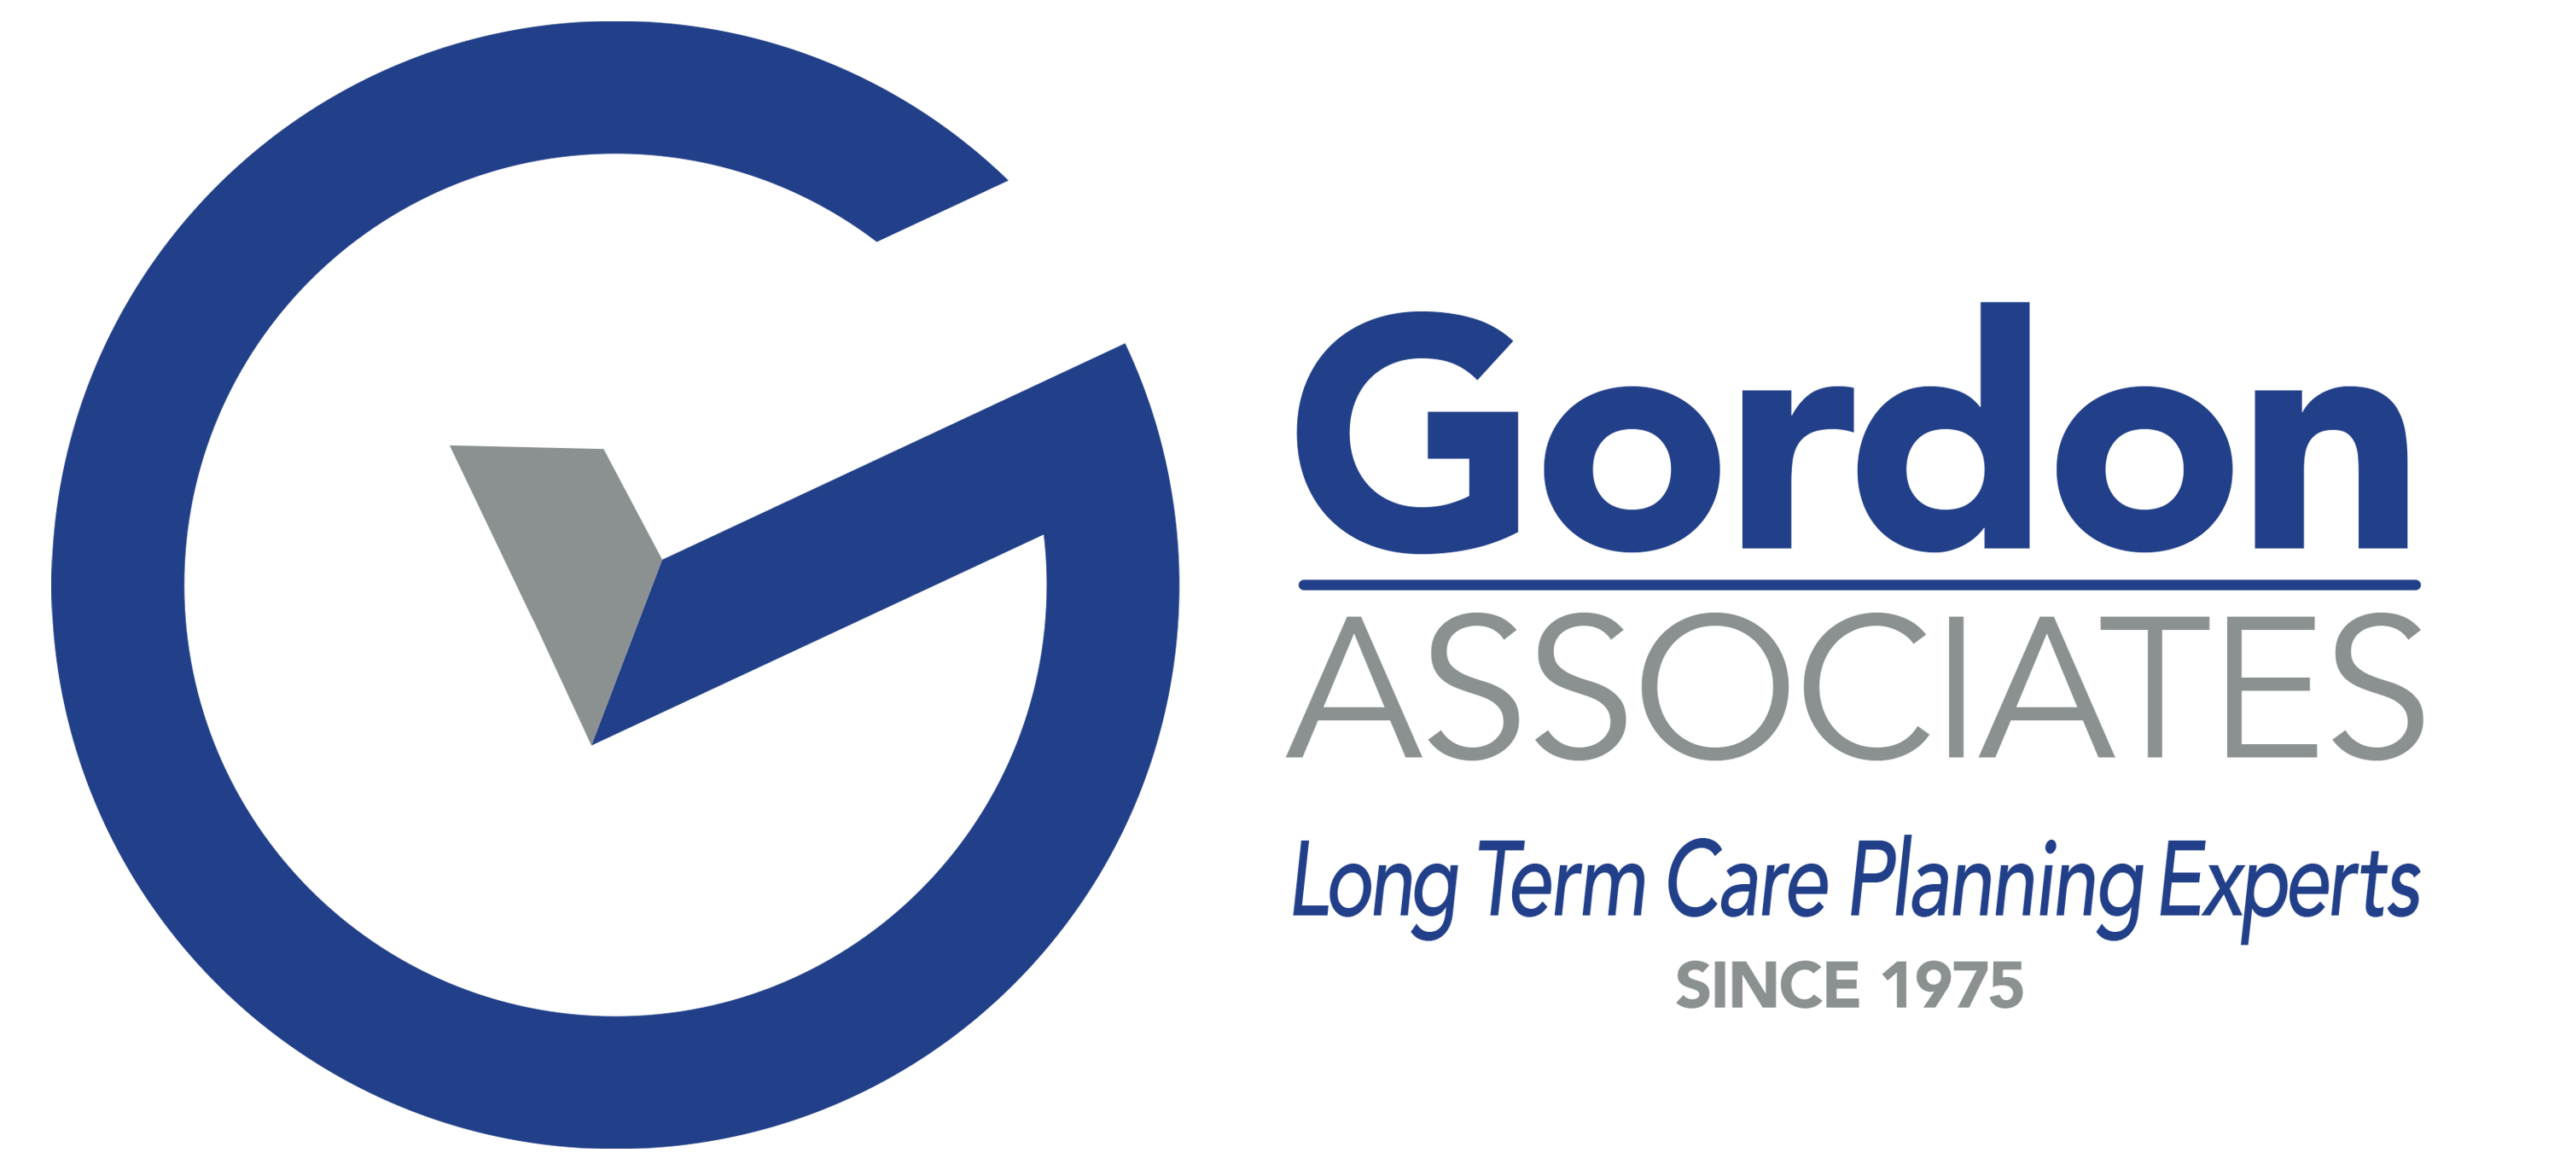 Gordon Associates Long Term Care